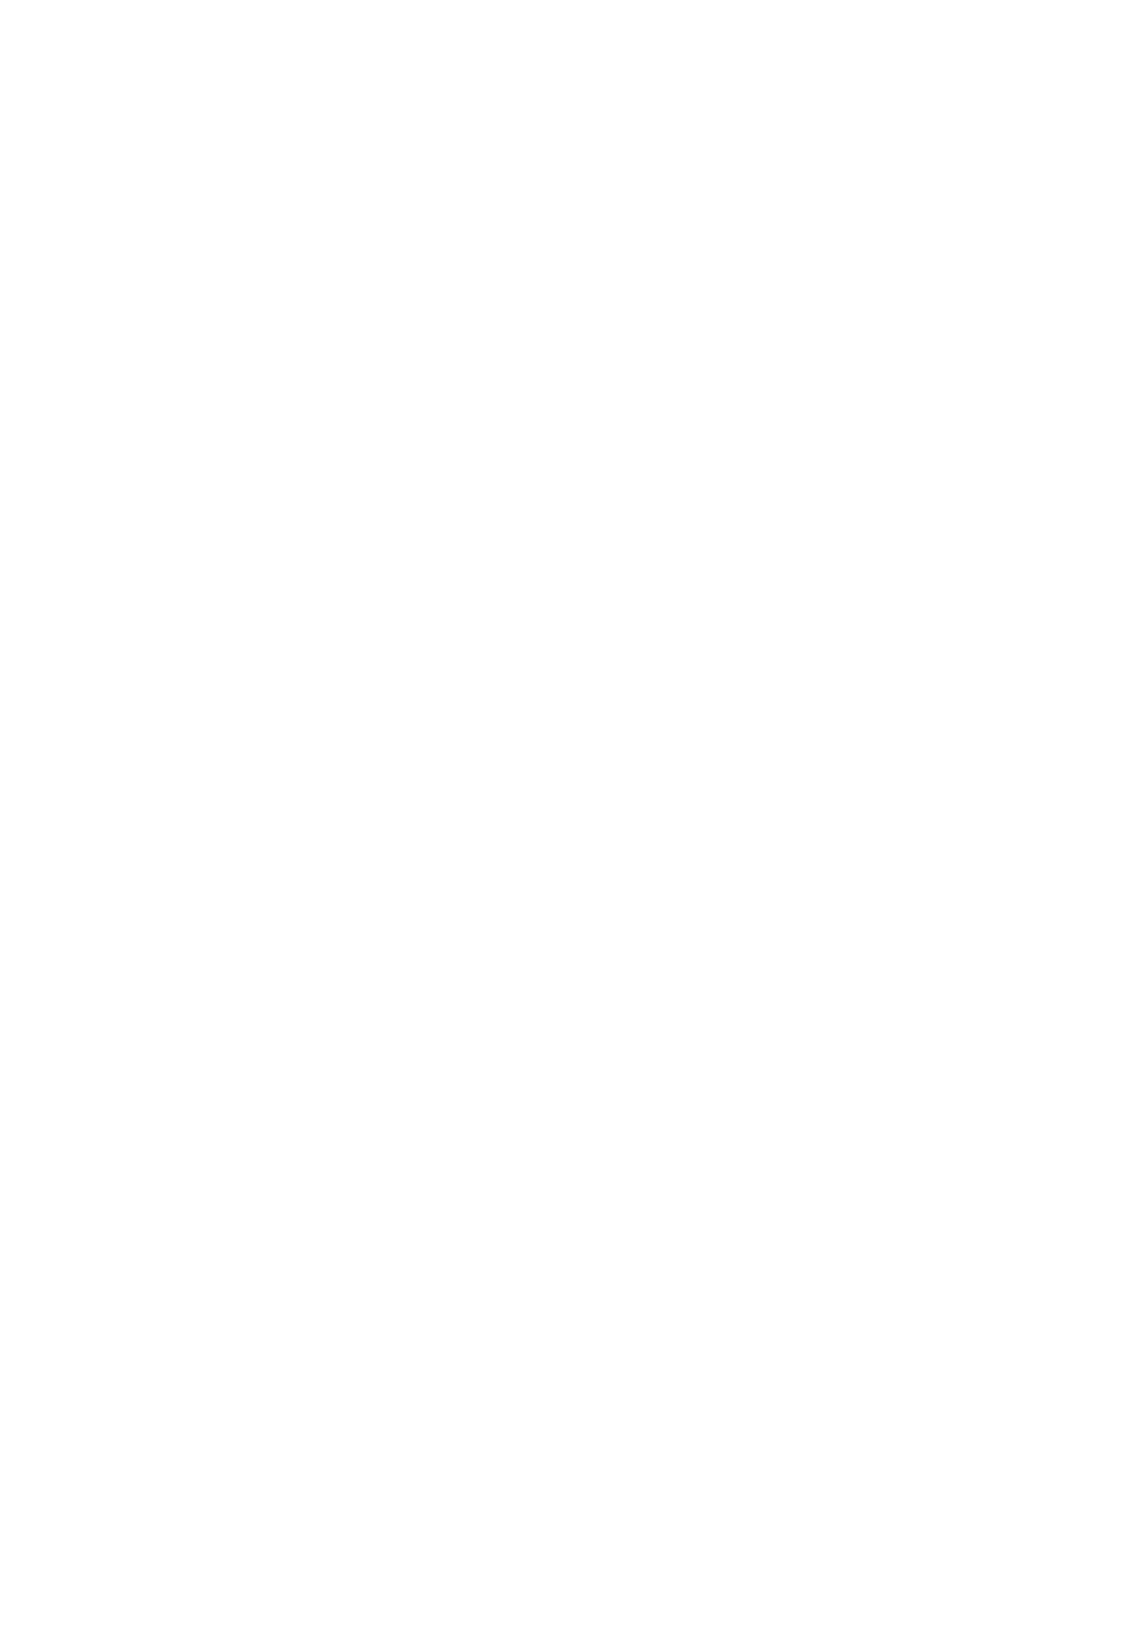 Cue Health logo grand pour les fonds sombres (PNG transparent)